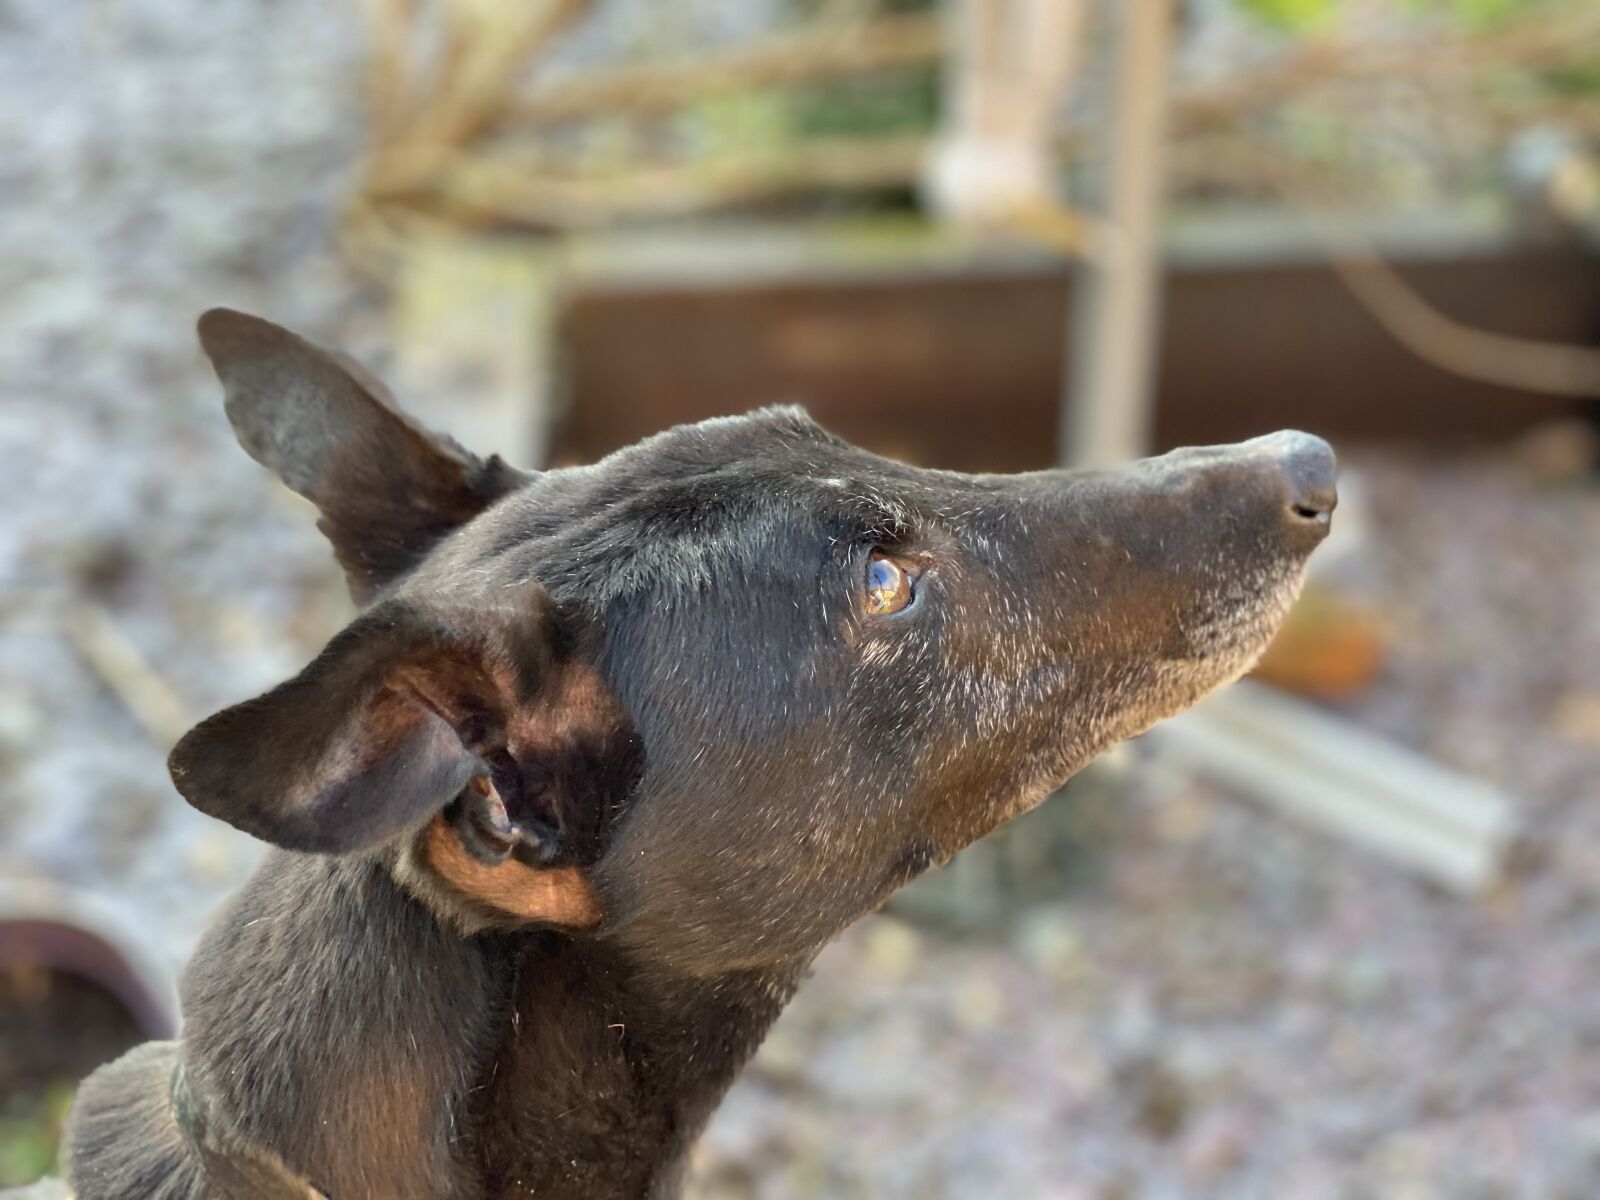 Apple iPhone 11 Pro sample photo. Greyhound, dog, pet photography